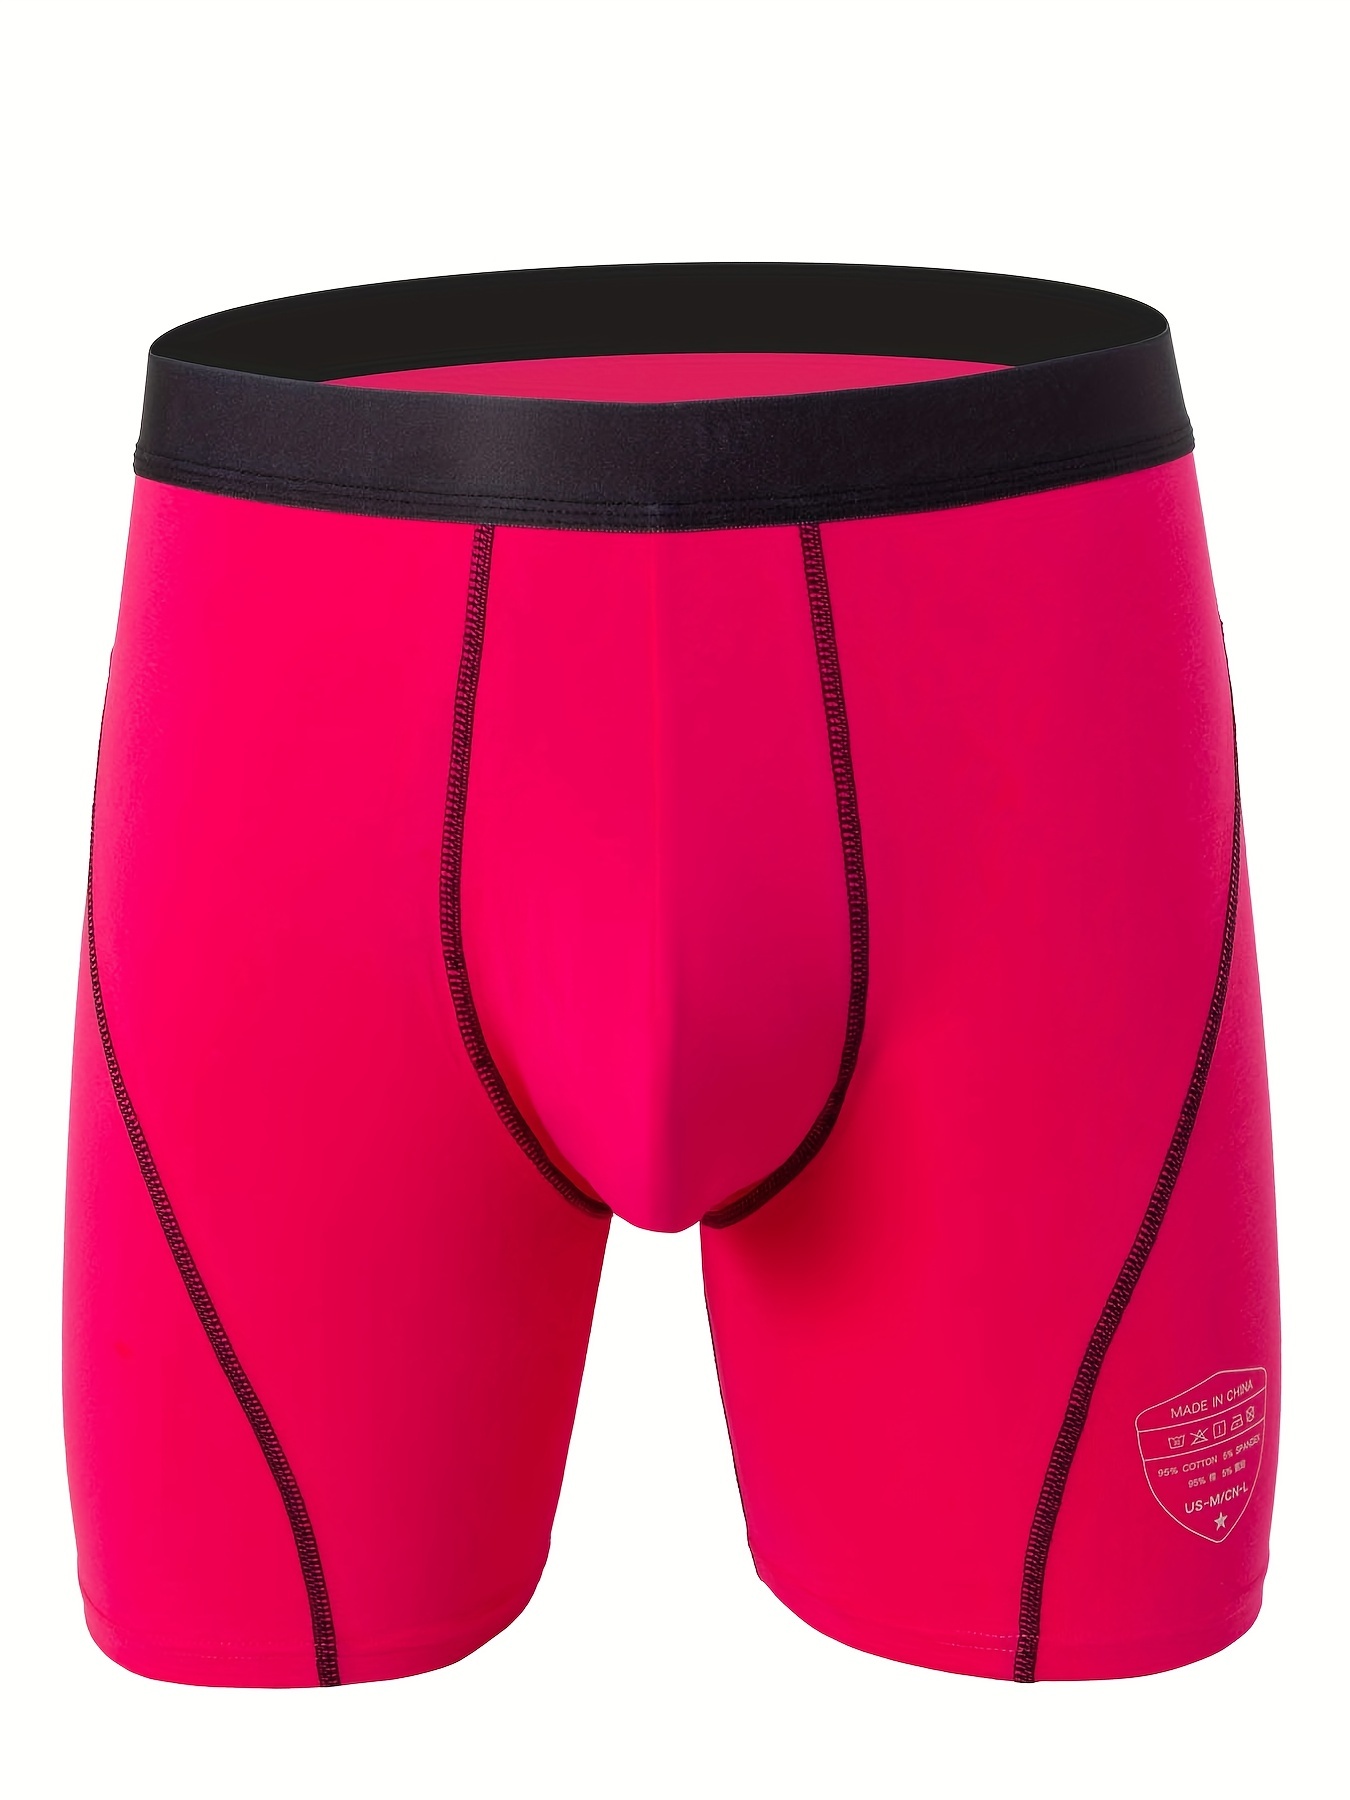 Pink Trunk Underwear - Made In USA